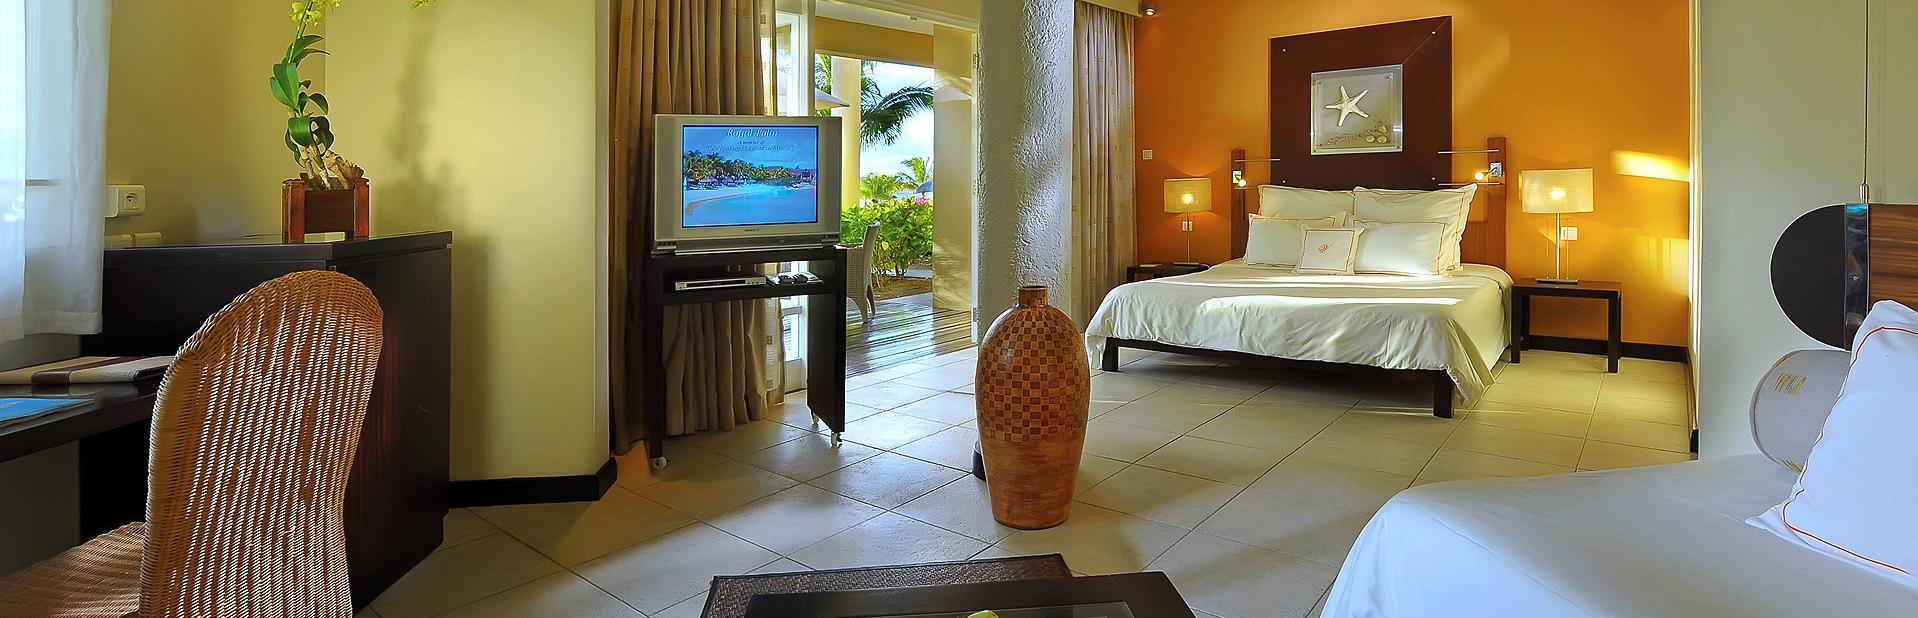 Отель Victoria Beachcomber Resort & Spa на Маврикии